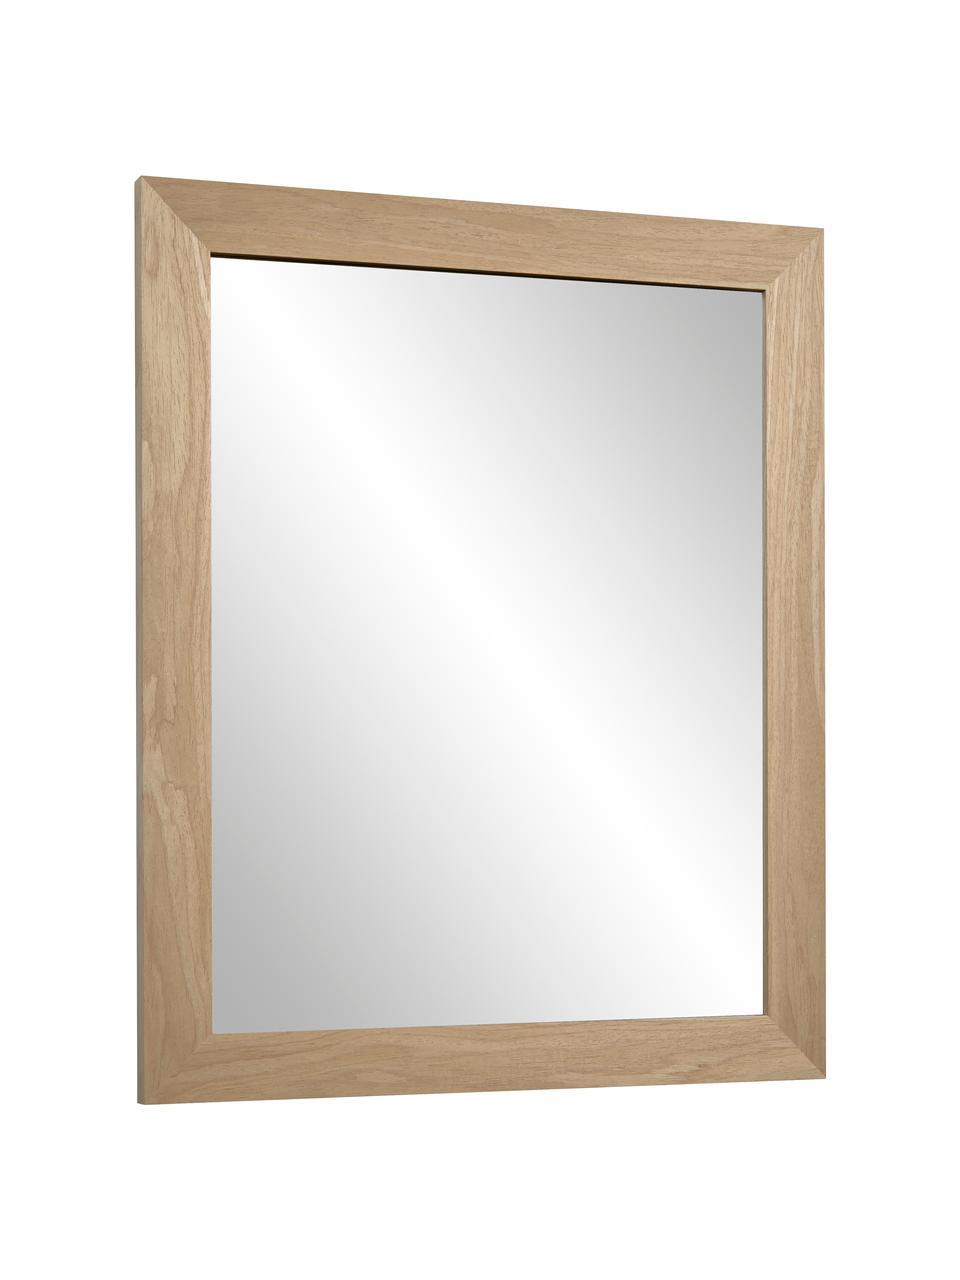 Wandspiegel Wilany mit Holzrahmen, Rahmen: Holz, Spiegelfläche: Spiegelglas, Beige, 47 x 58 cm